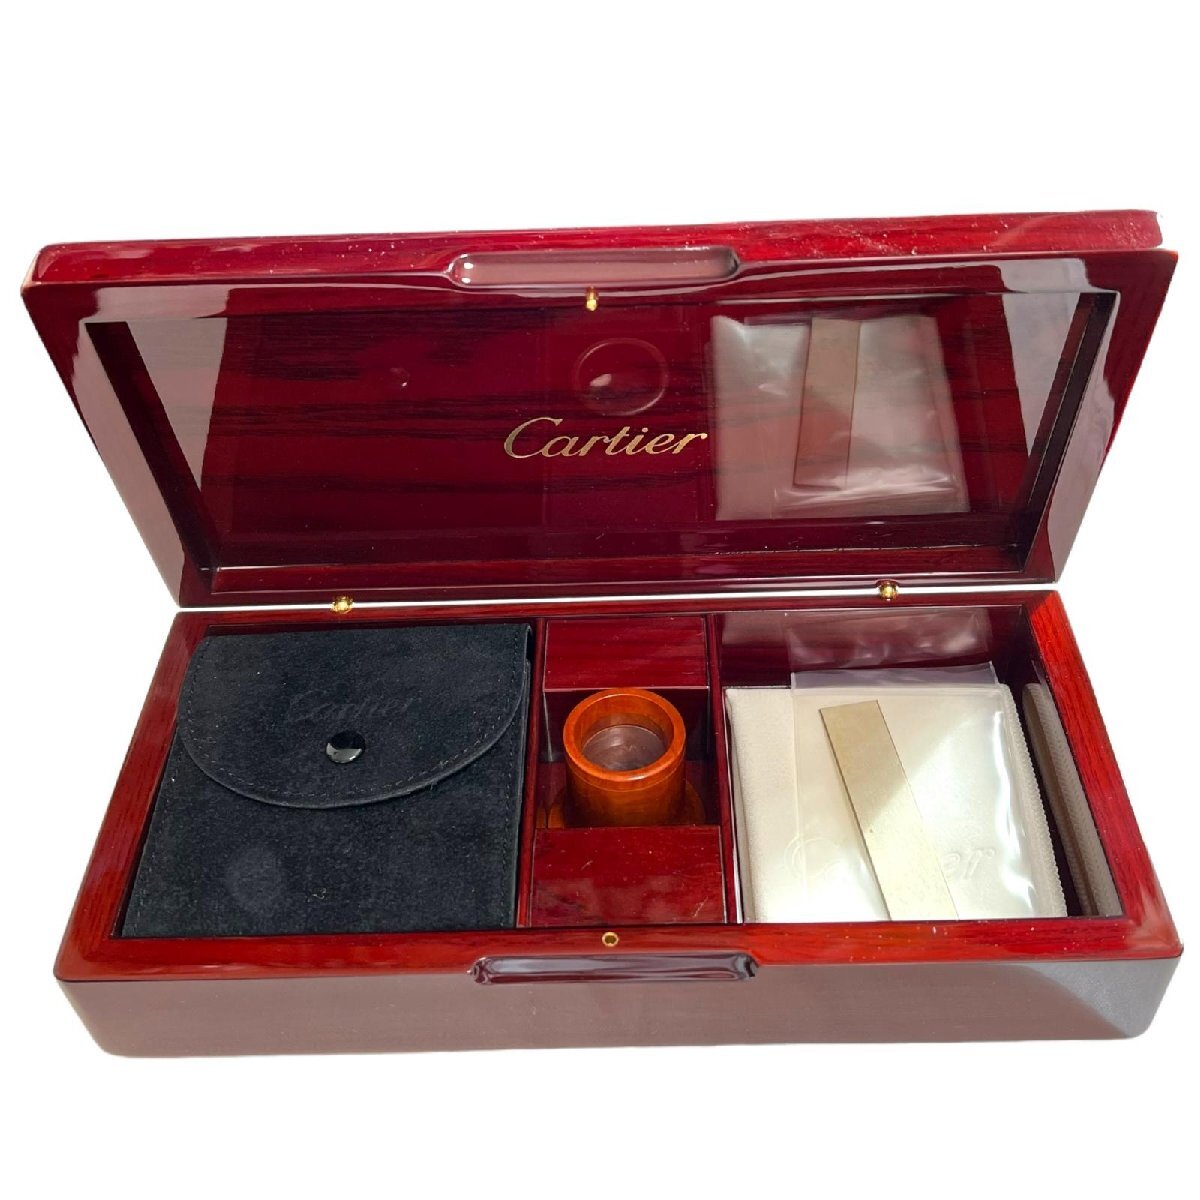 Cartier Cartier часы box кейс для часов jue Reebok s из дерева дерево коробка tray место хранения мелкие вещи 